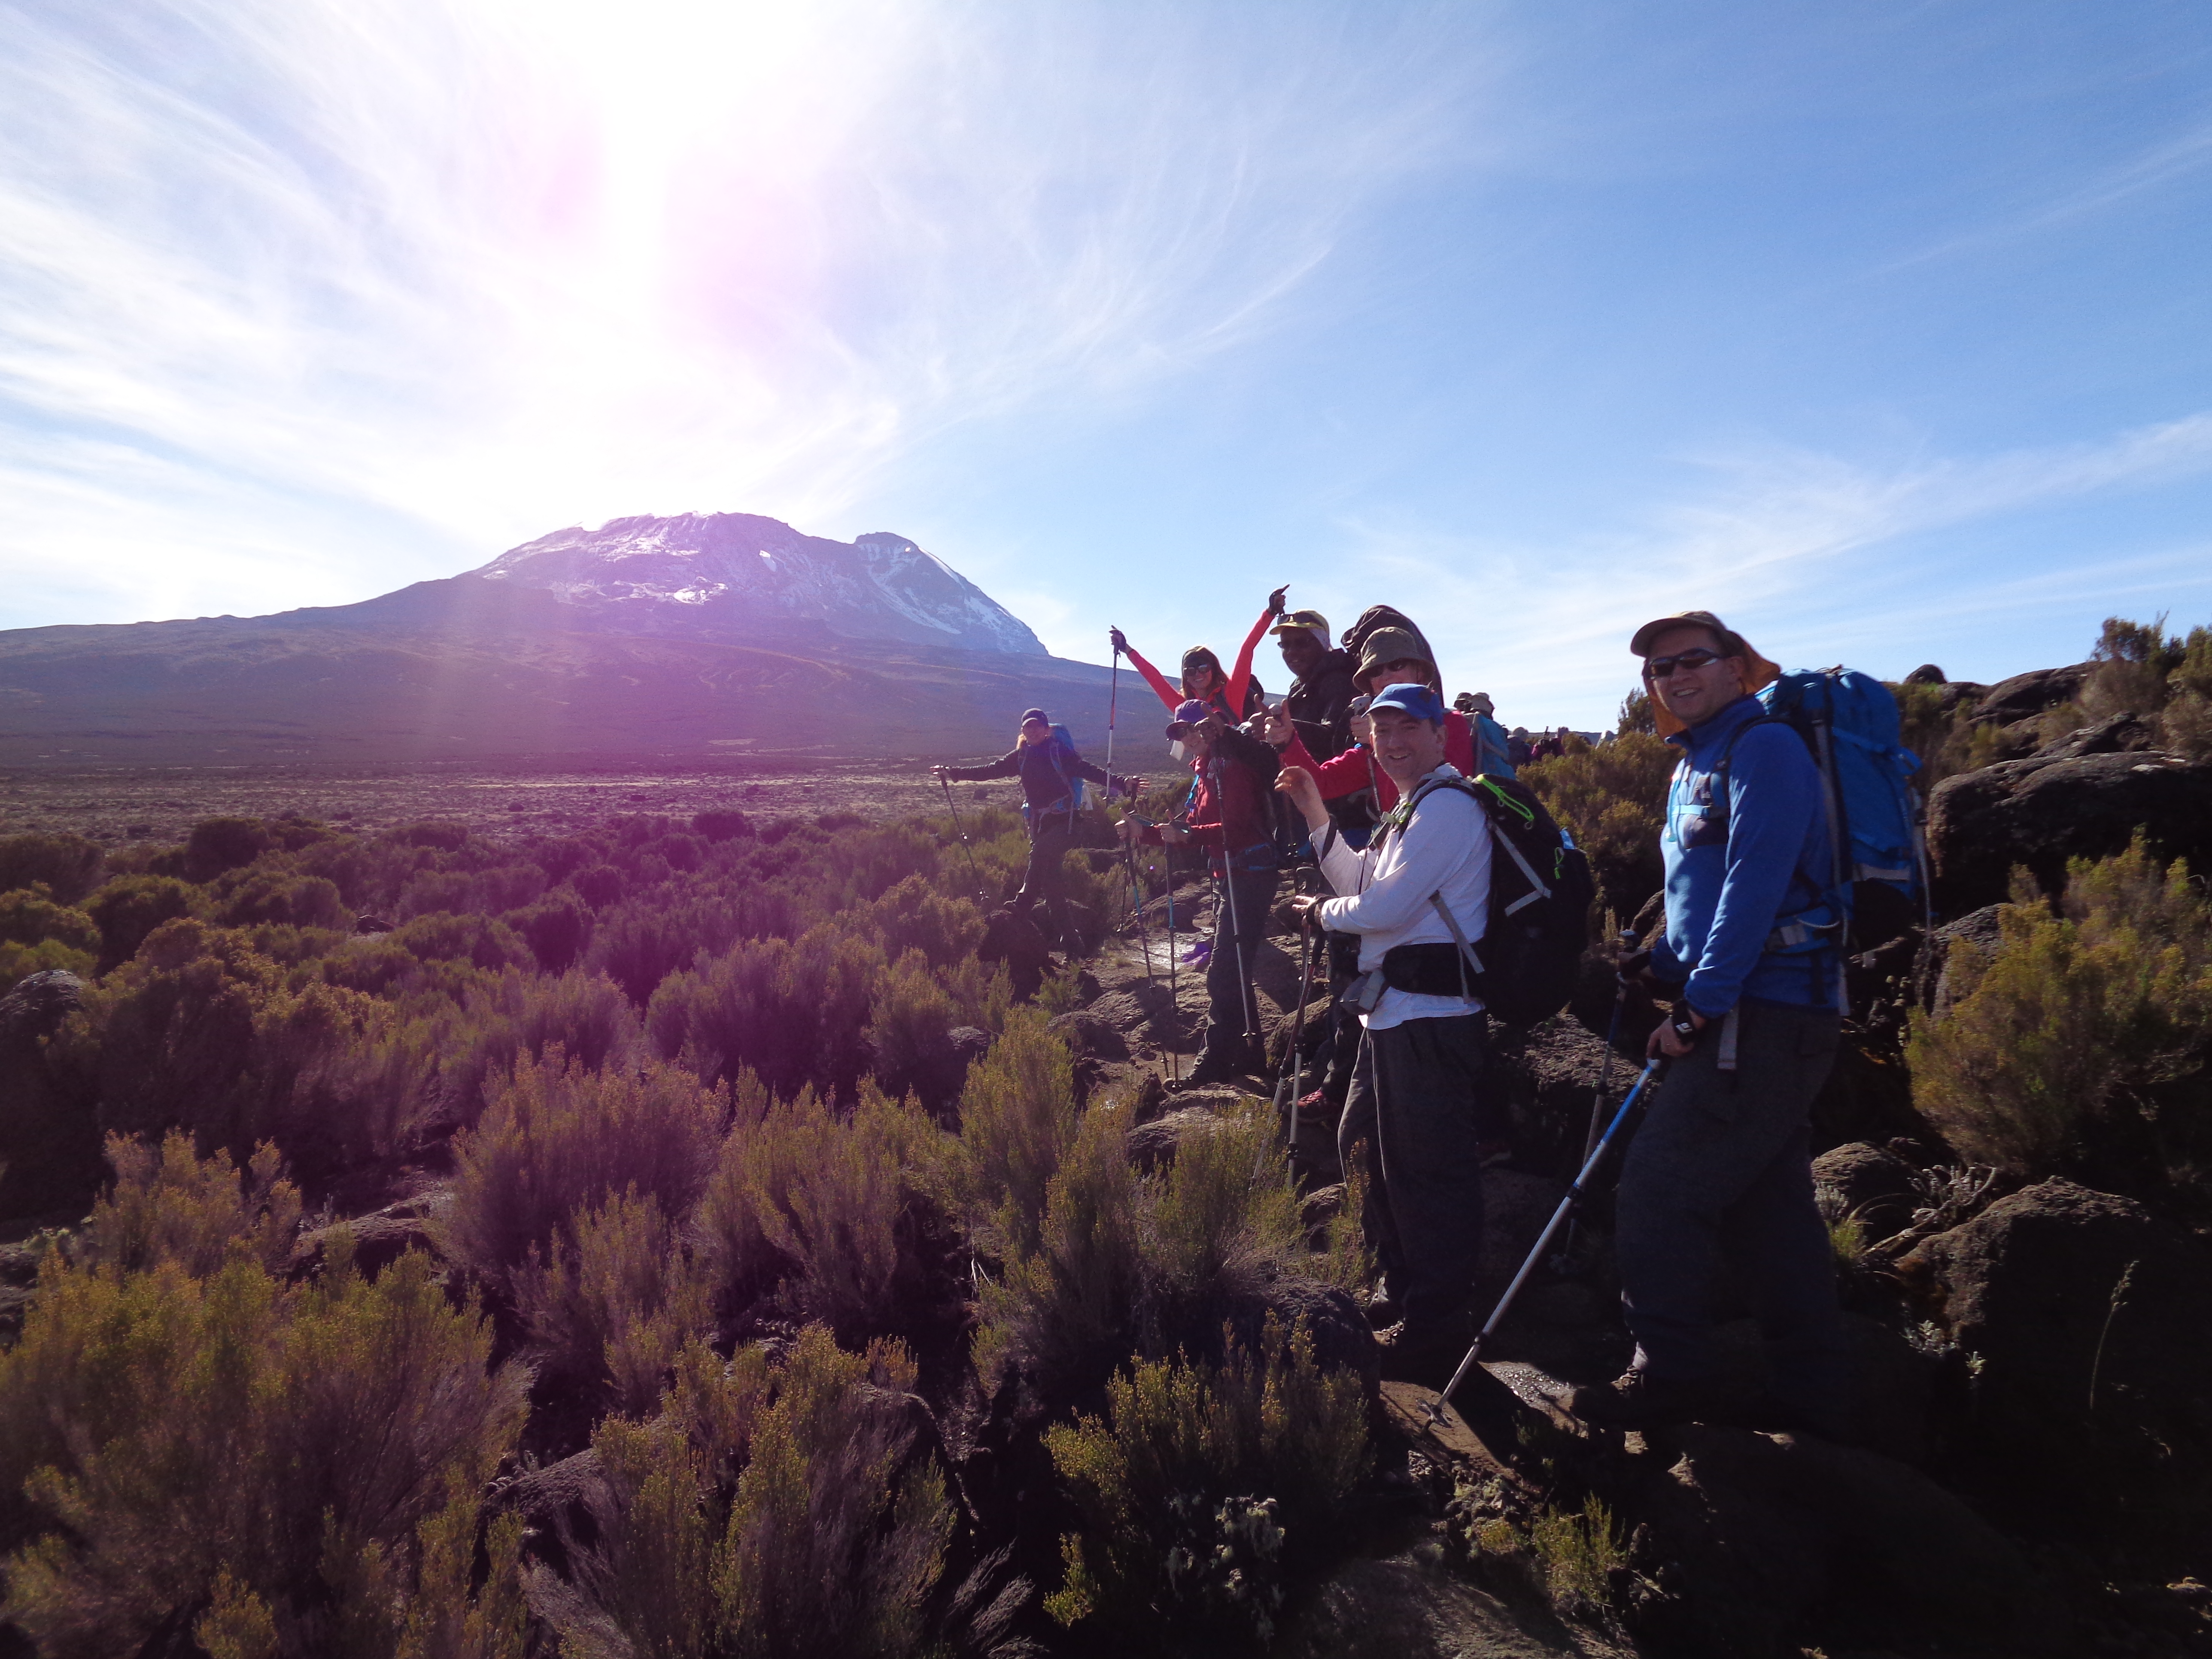 Daily Distances Traveled On The Lemosho Route Up Kilimanjaro